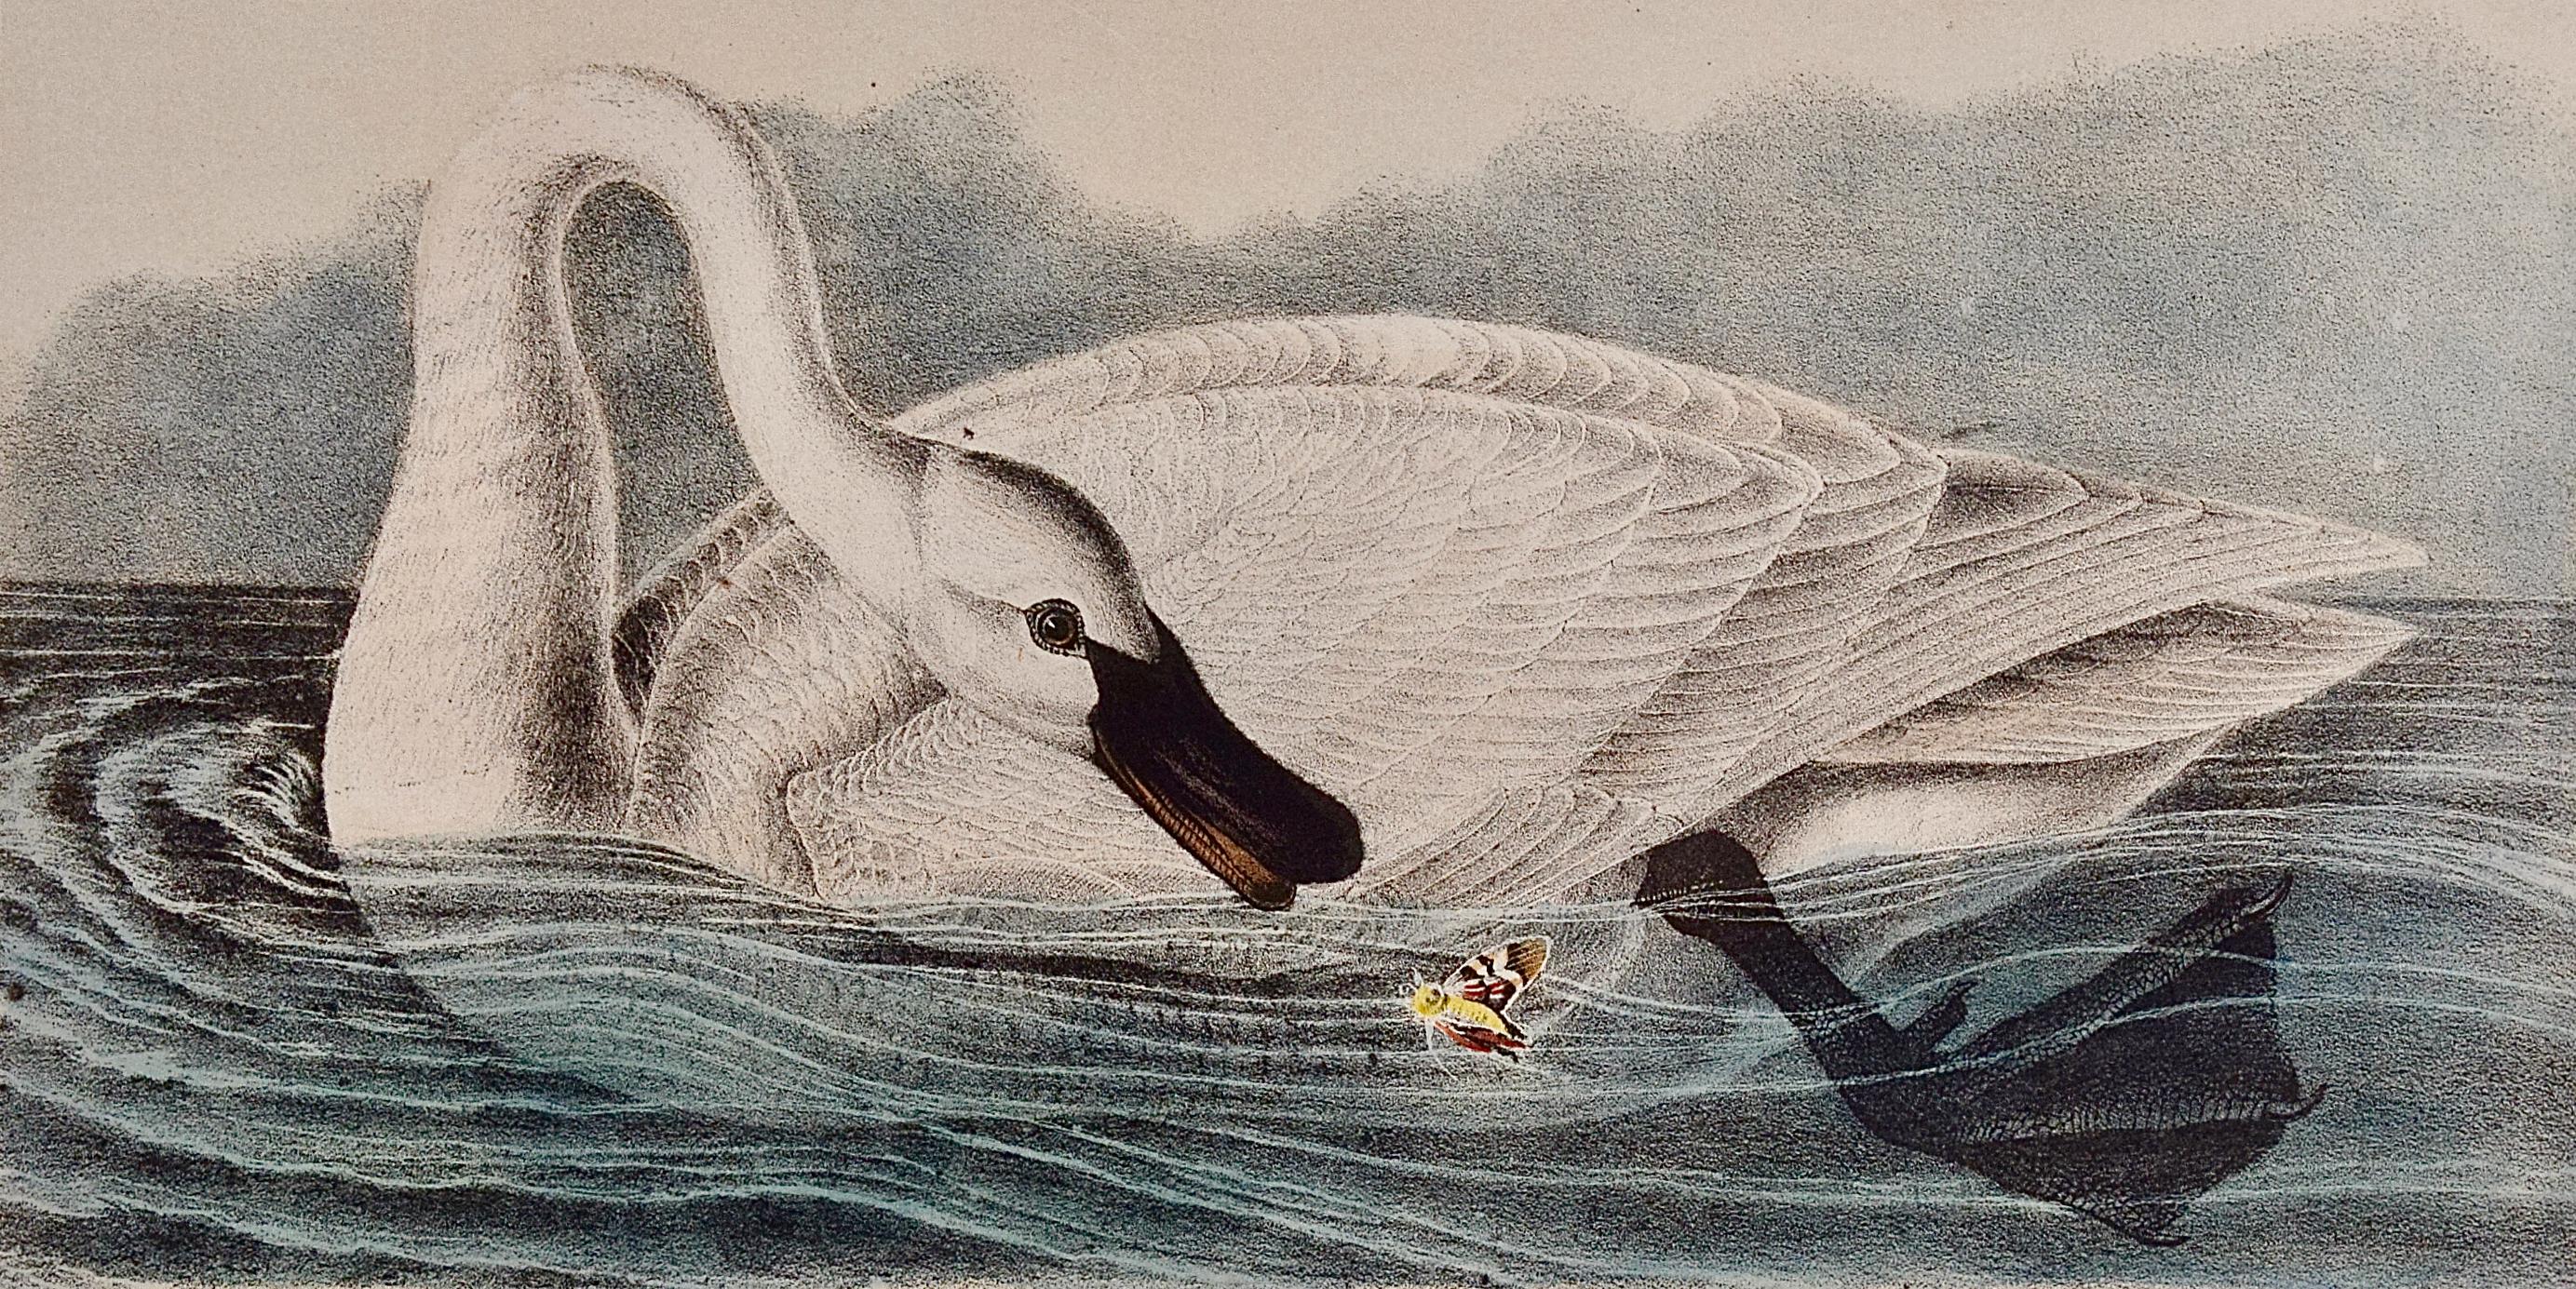 Le cygne trompettiste, adulte : une lithographie originale d'un Audubon colorée à la main  - Print de John James Audubon